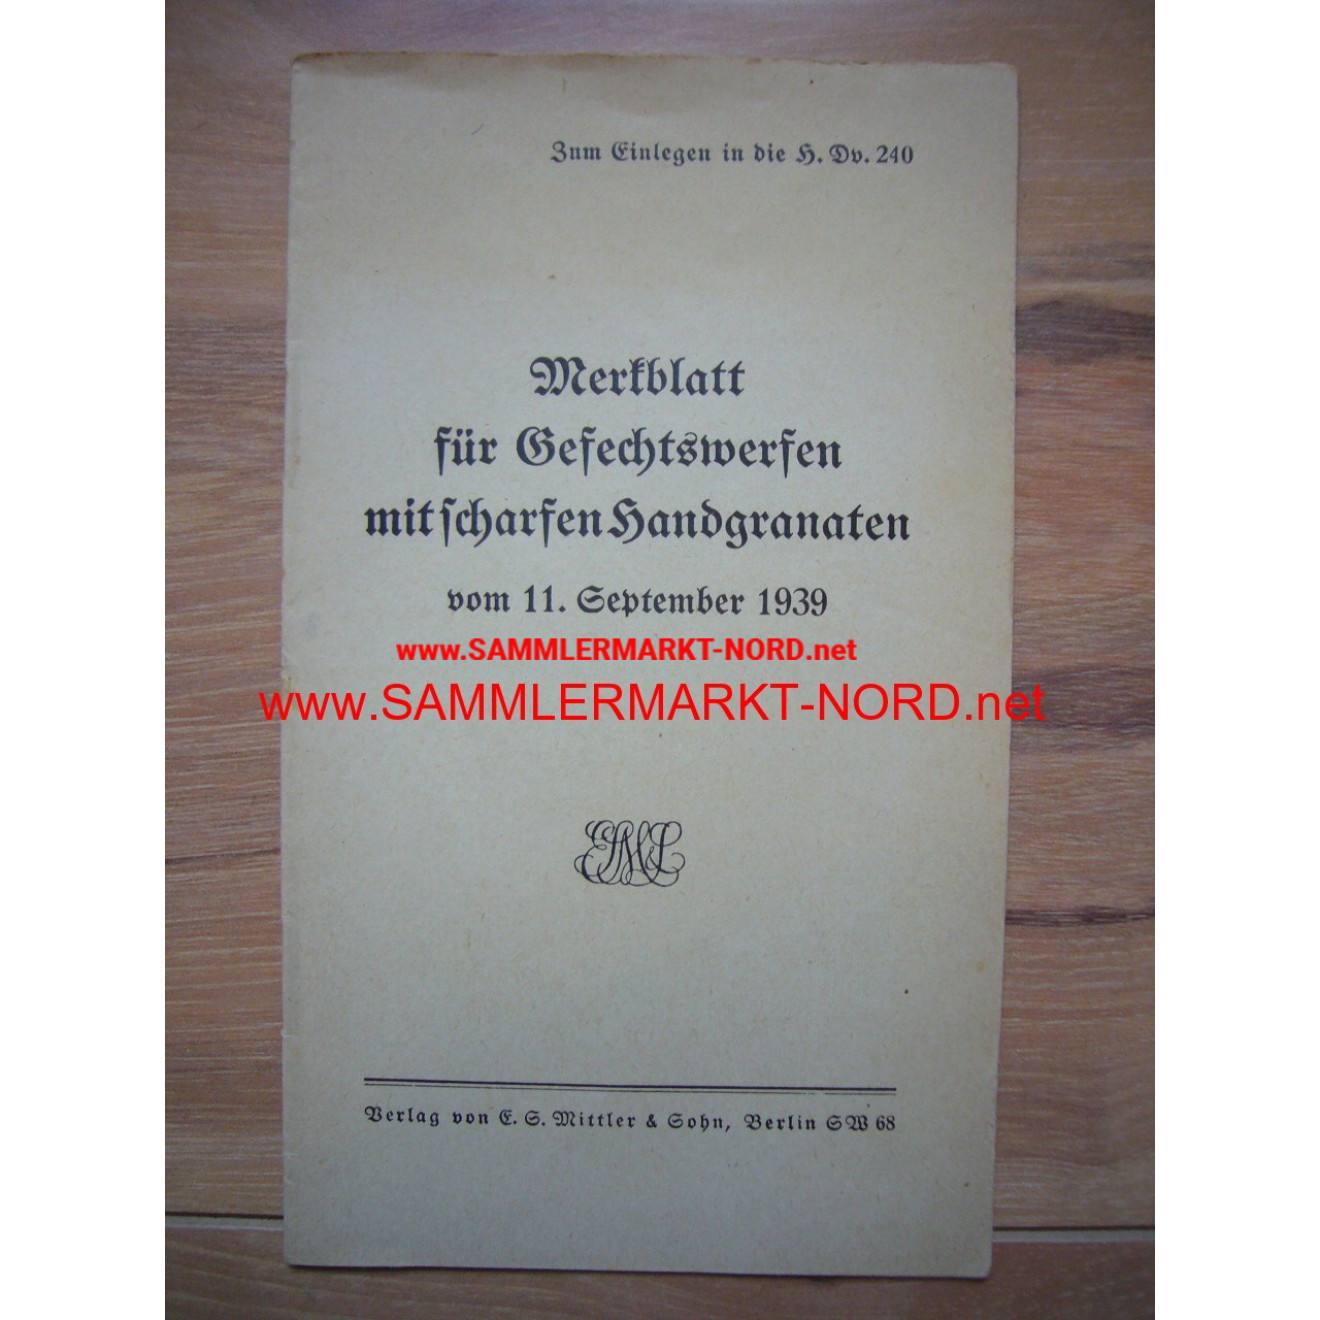 H.Dv. 240 - Merkblatt für Gefechtswerfen mit scharfen Handgranat